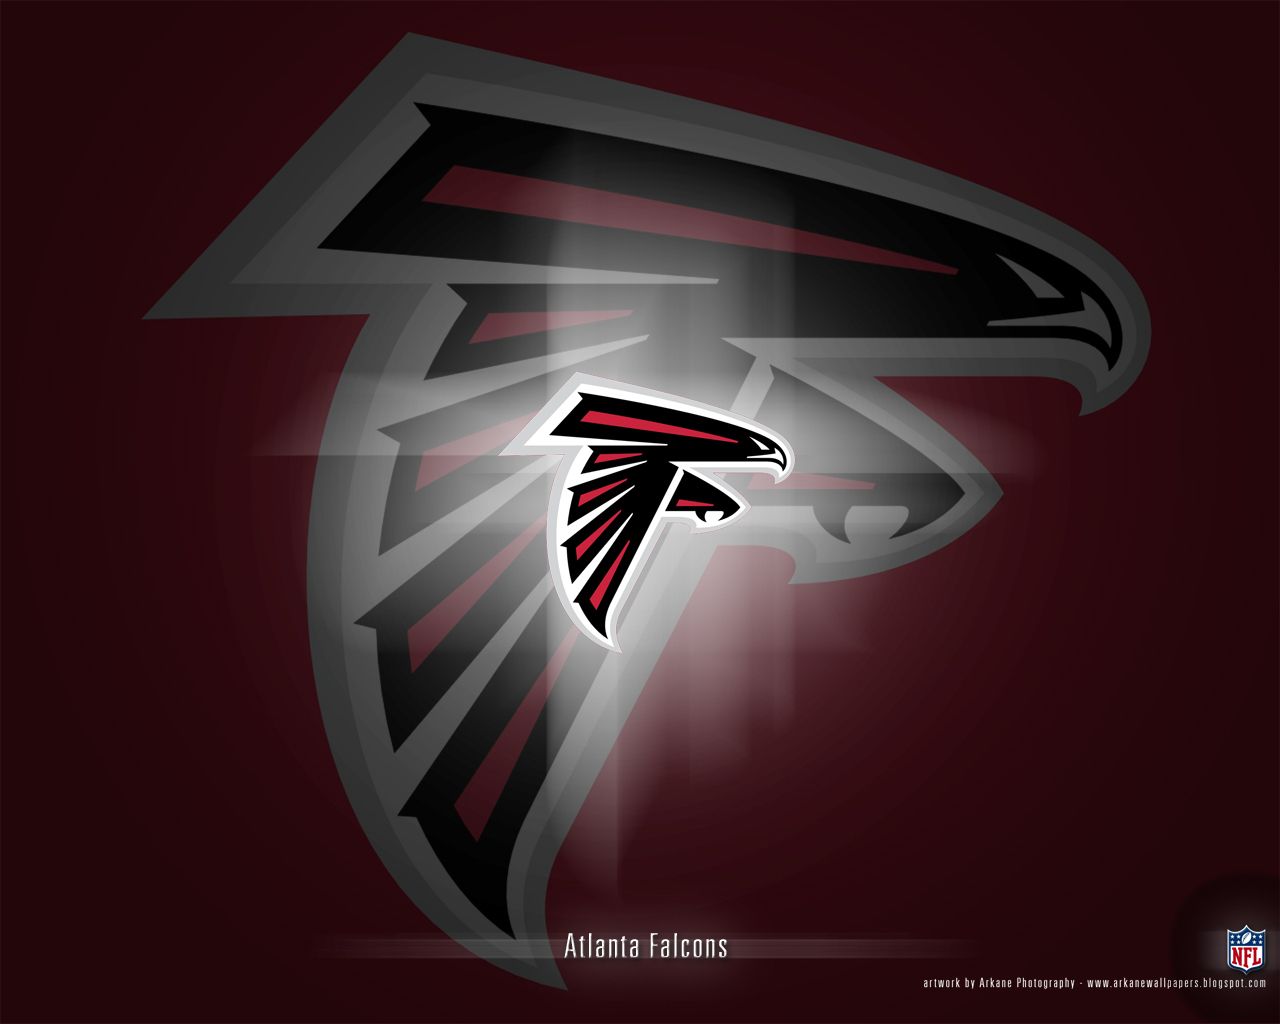 Atlanta Falcons - Atlanta Falcons Wallpaper (9173279) - Fanpop